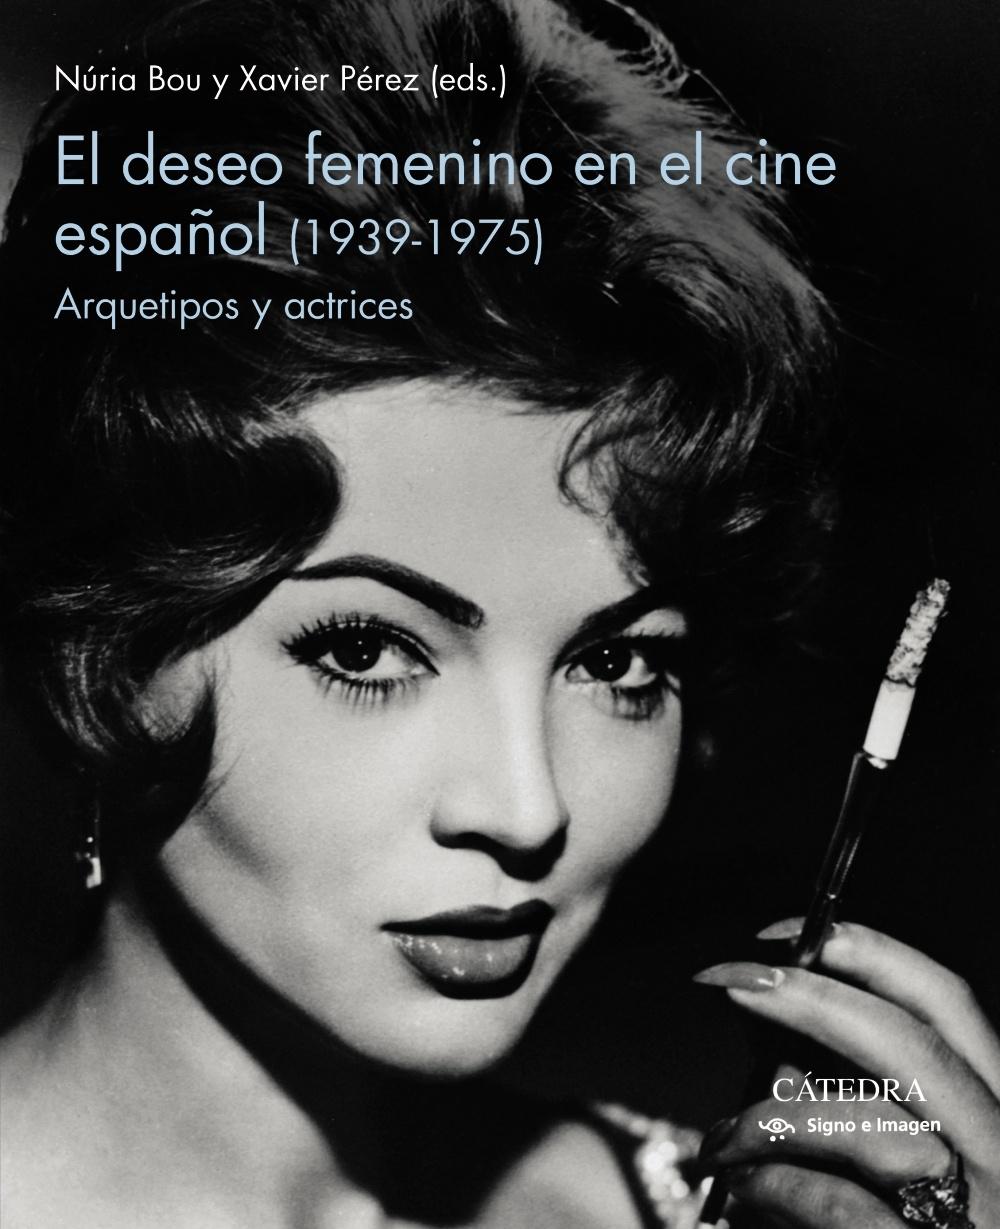 El deseo femenino en el cine español (1939-1975) "Arquetipos y actrices"